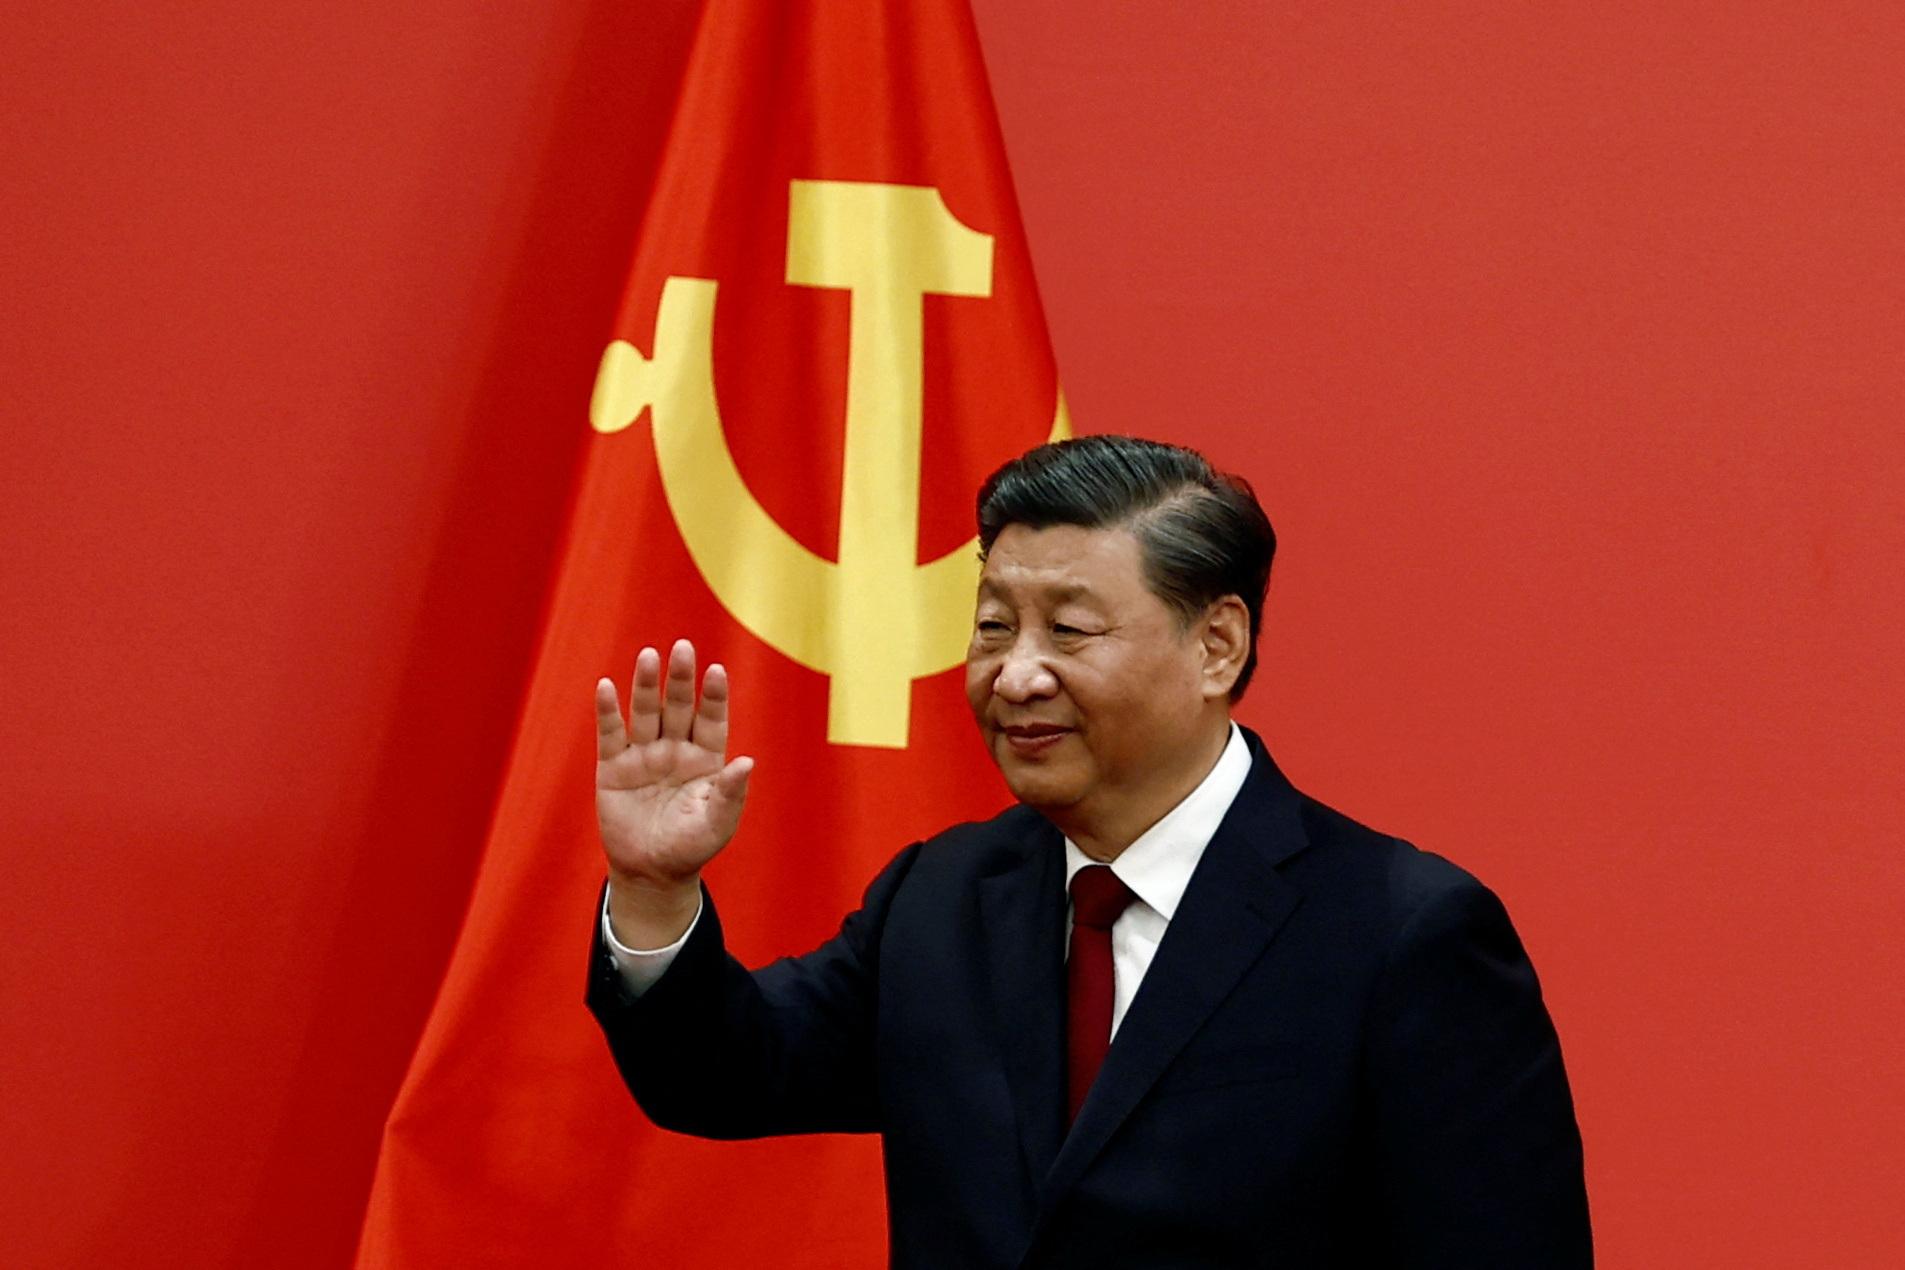 Čínsky prezident ostro kritizoval USA, podľa neho bráni rozvoju Číny